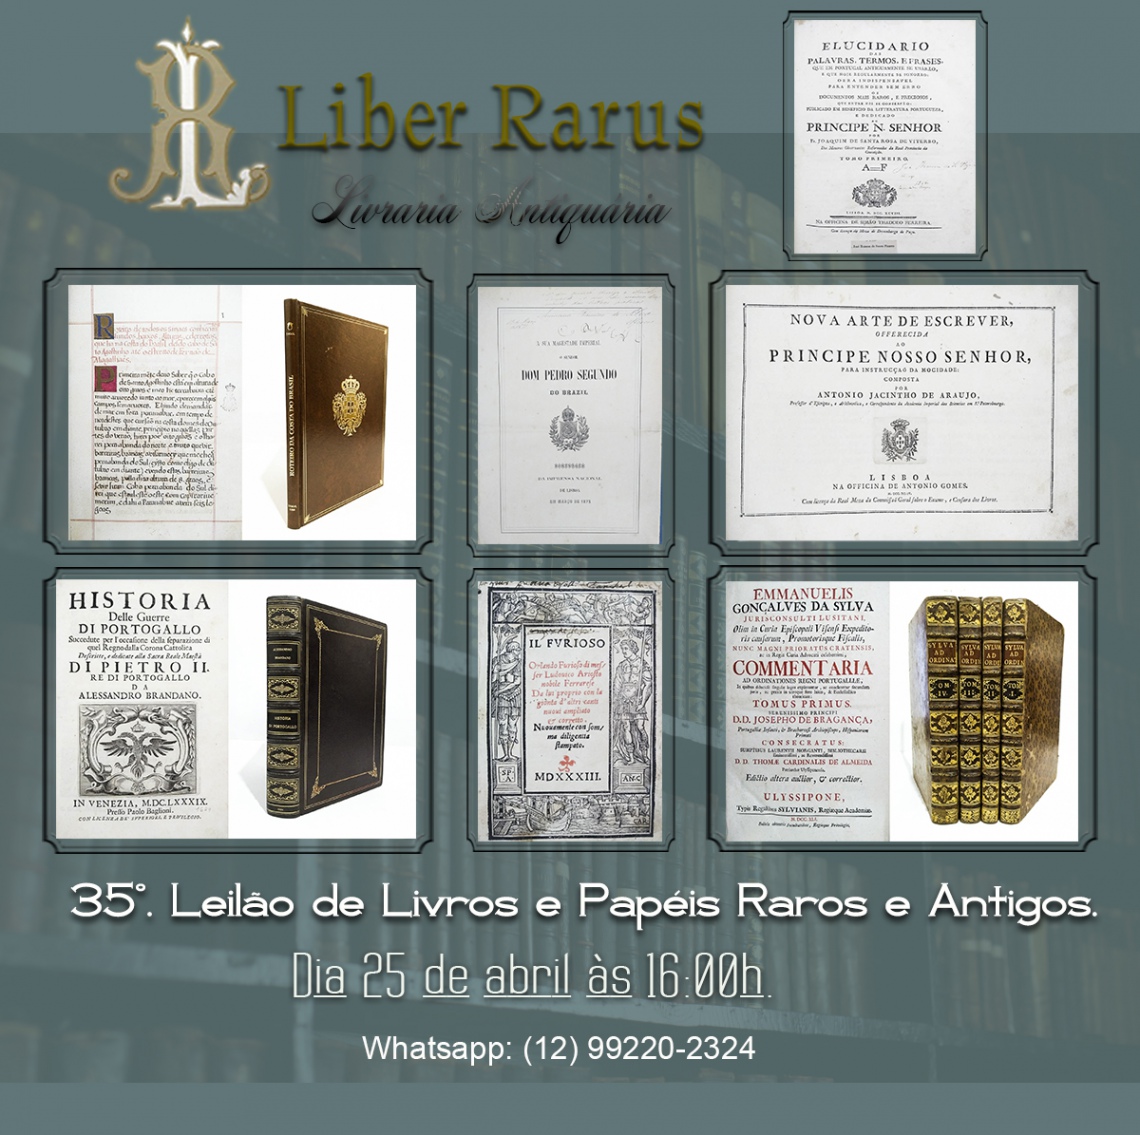 35º Leilão de Livros e Papéis Raros e Antigos - Liber Rarus - 25/04/2022 - 16h00